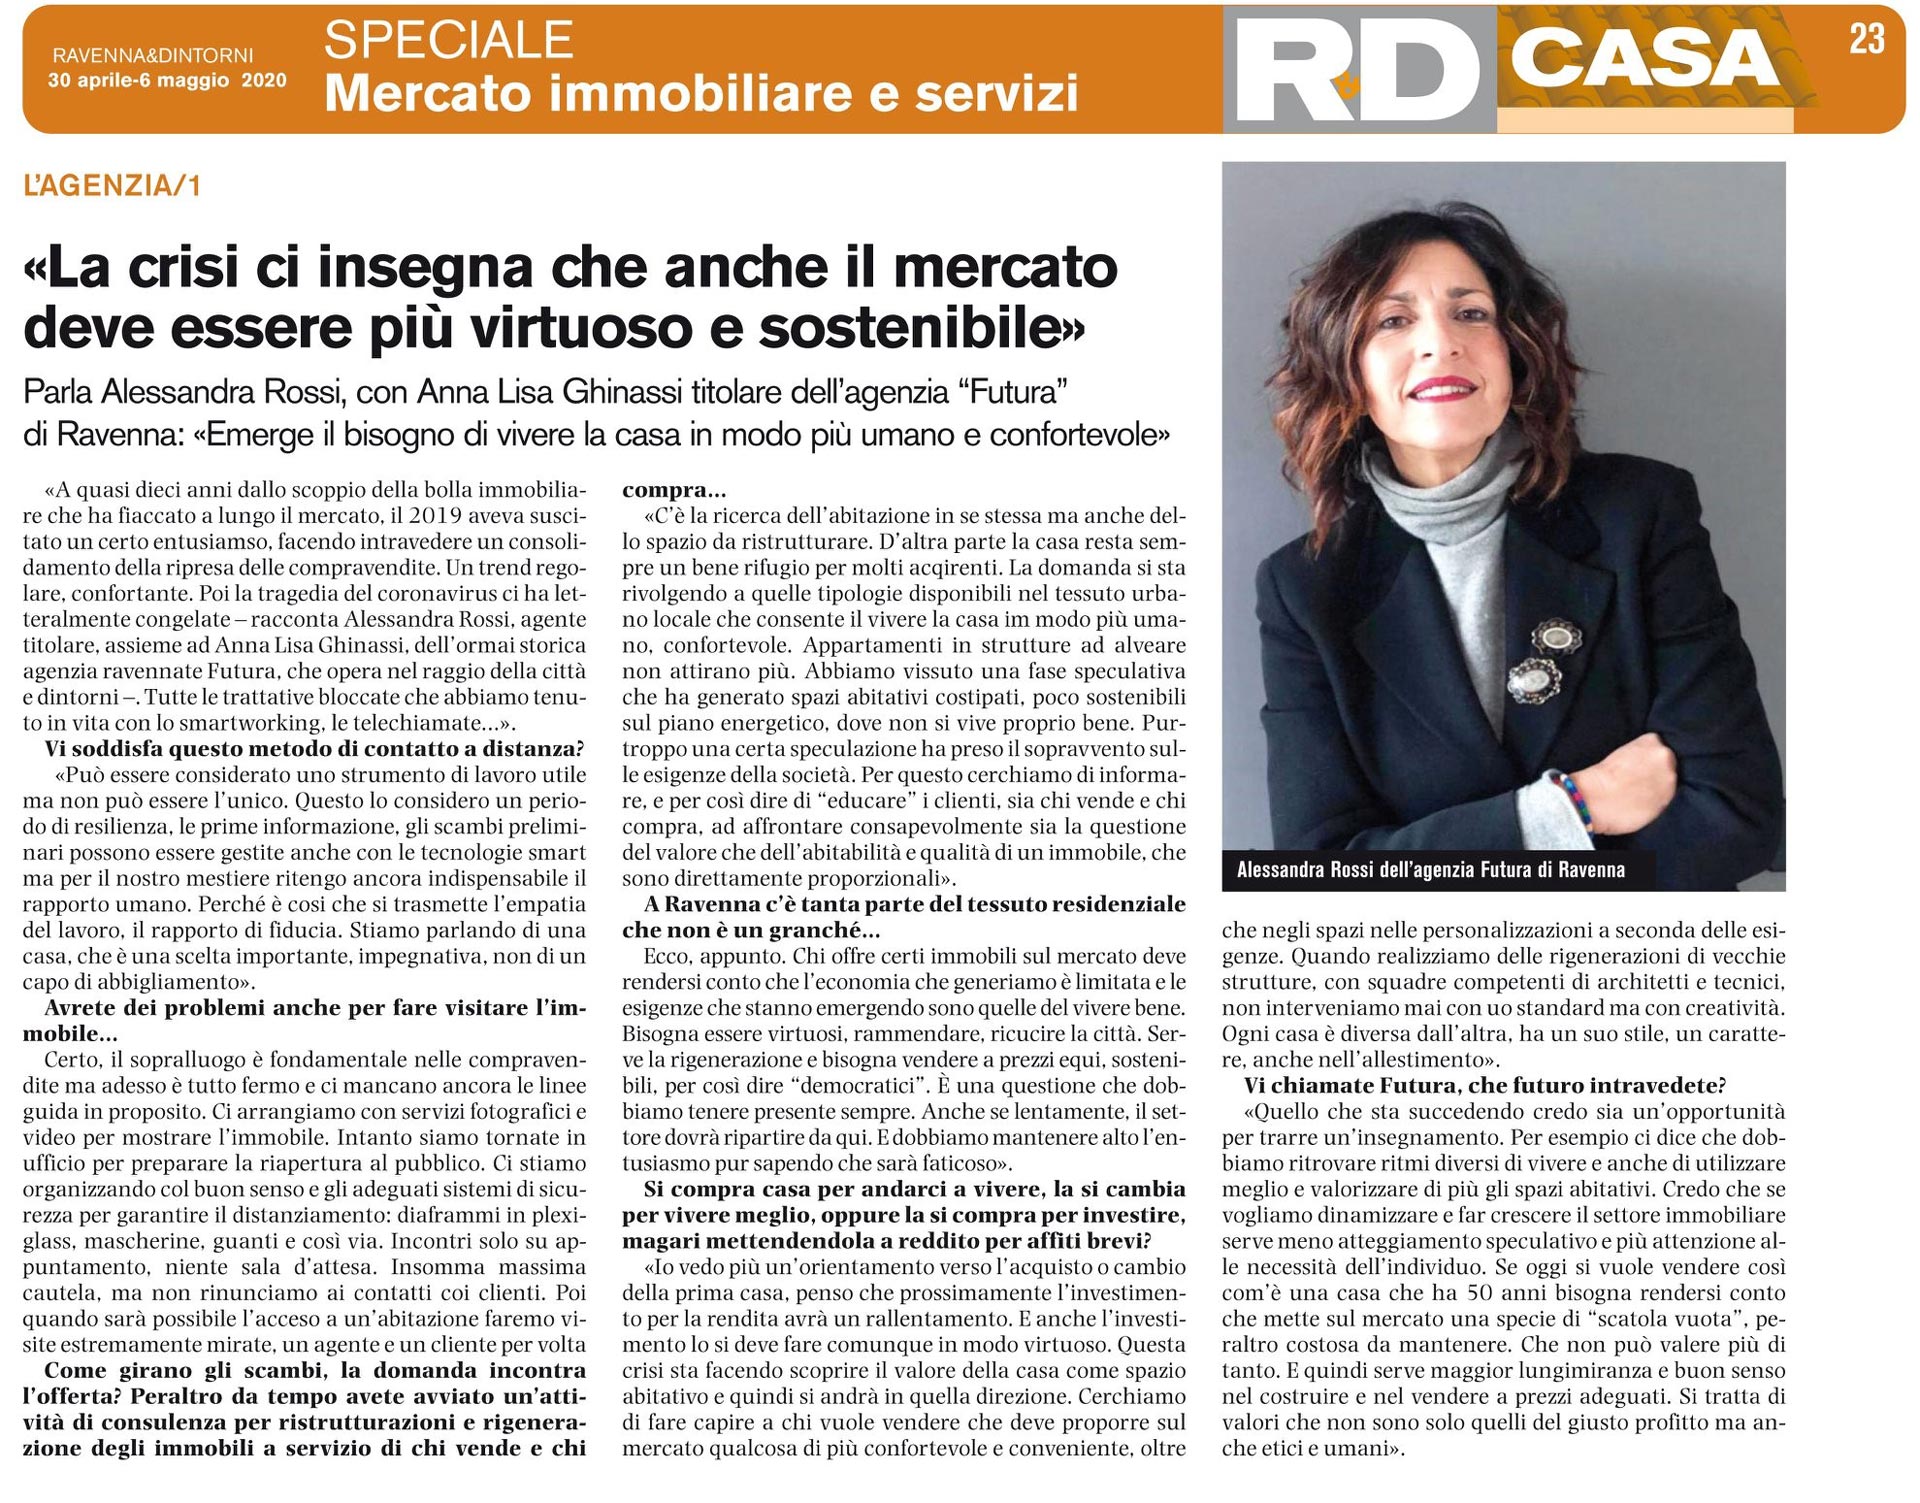 intervista RD casa Alessandra Rossi